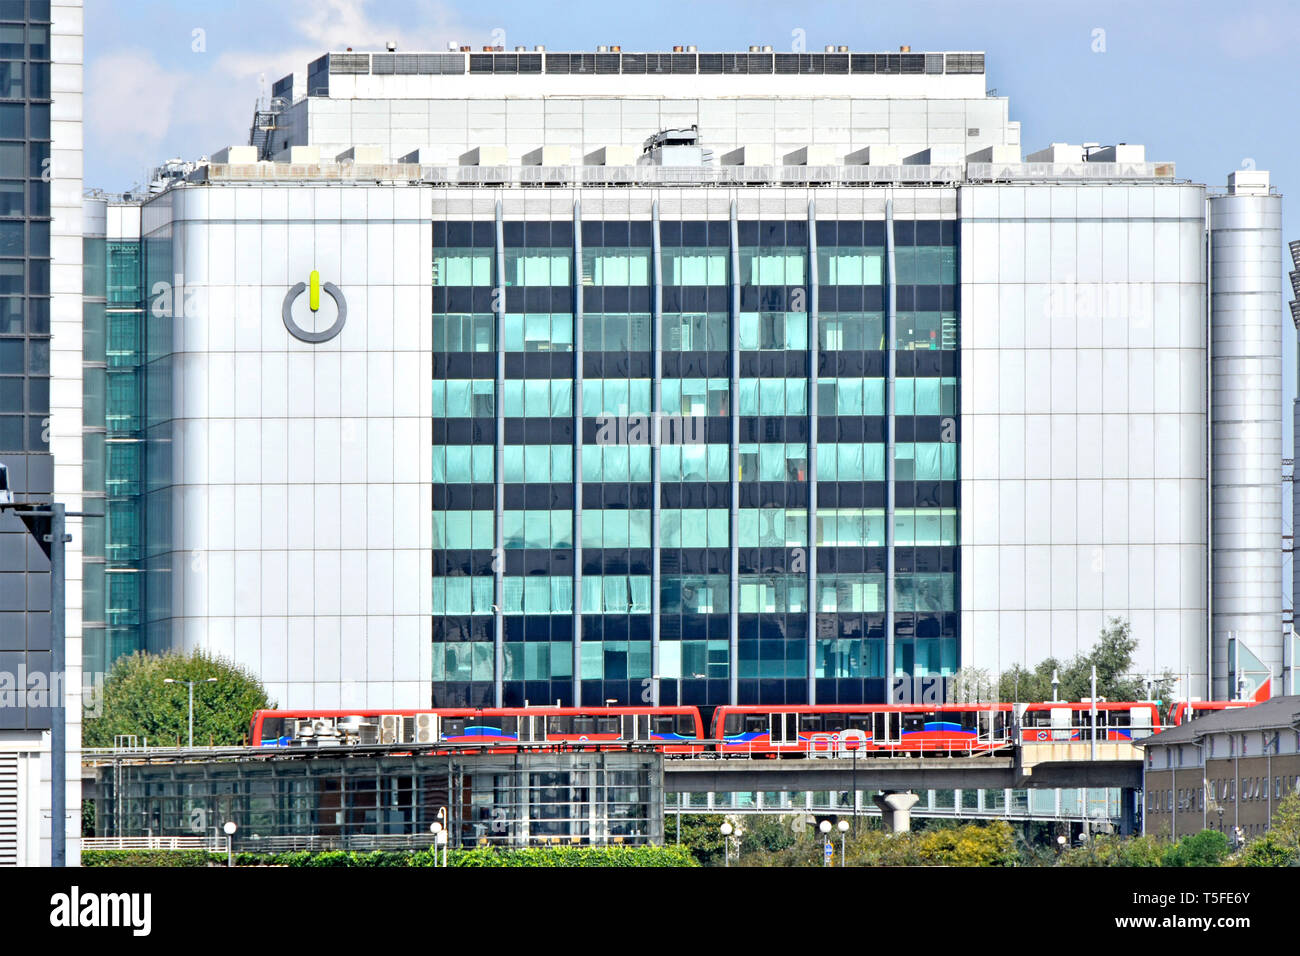 La technologie de commutation Global Business Centre de données logo sur un immeuble moderne Docklands light railway station East India Docks & train East London England UK Banque D'Images